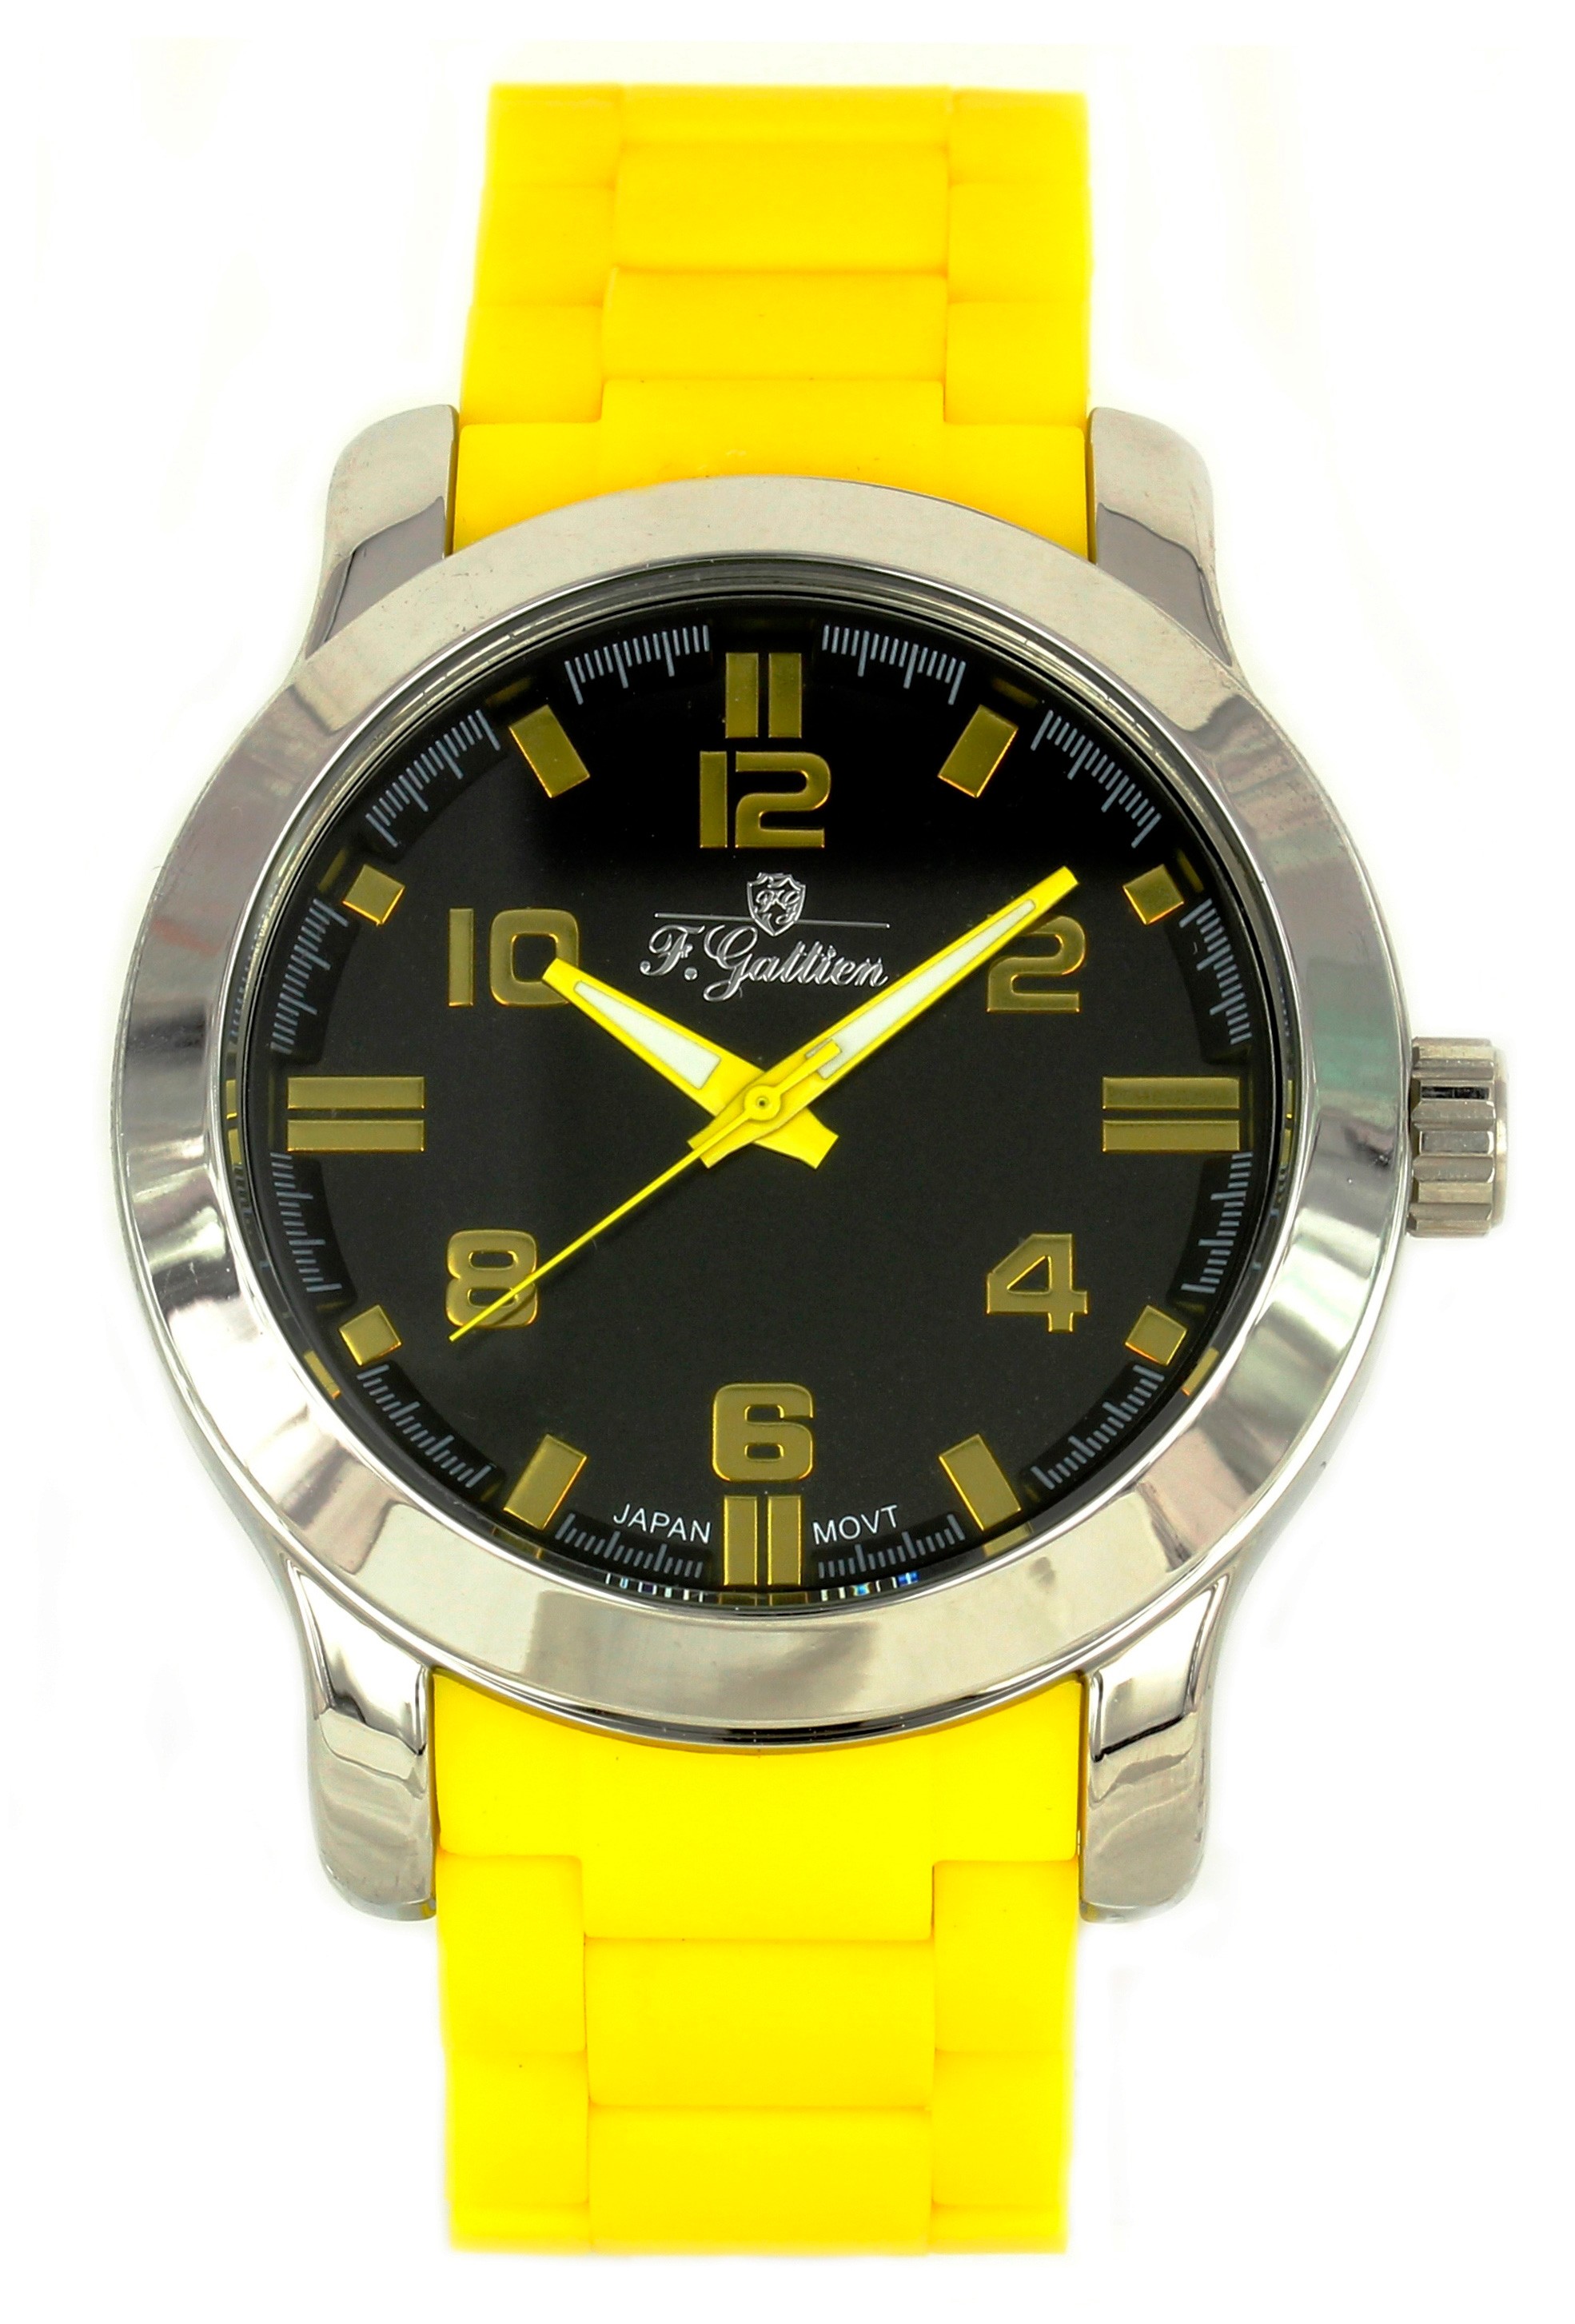 фото Наручные часы мужские f.gattien 1921-314-09 желтые